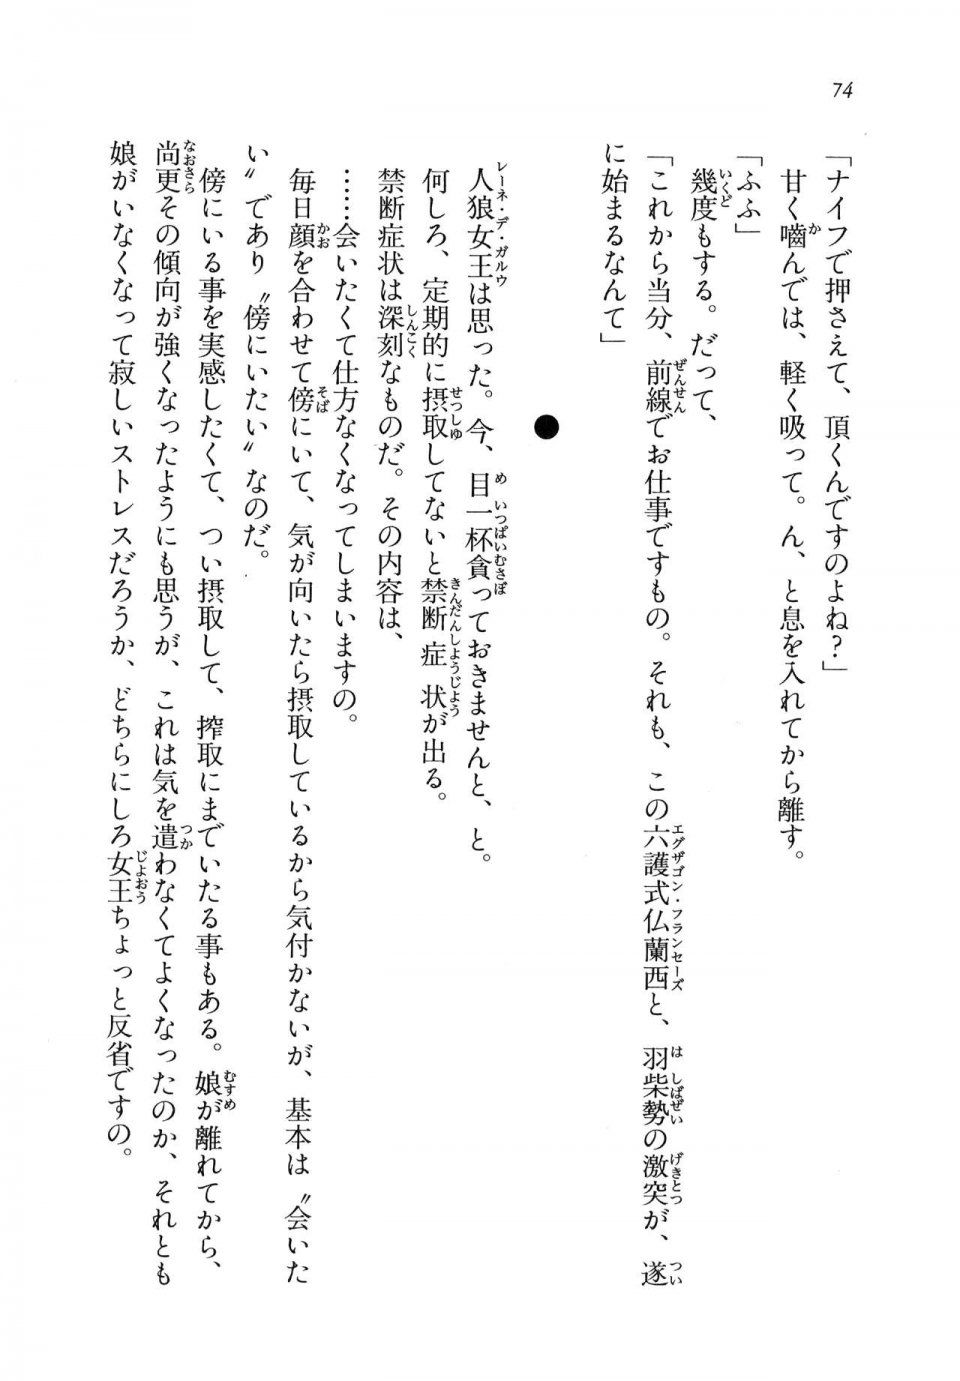 Kyoukai Senjou no Horizon LN Vol 11(5A) - Photo #74